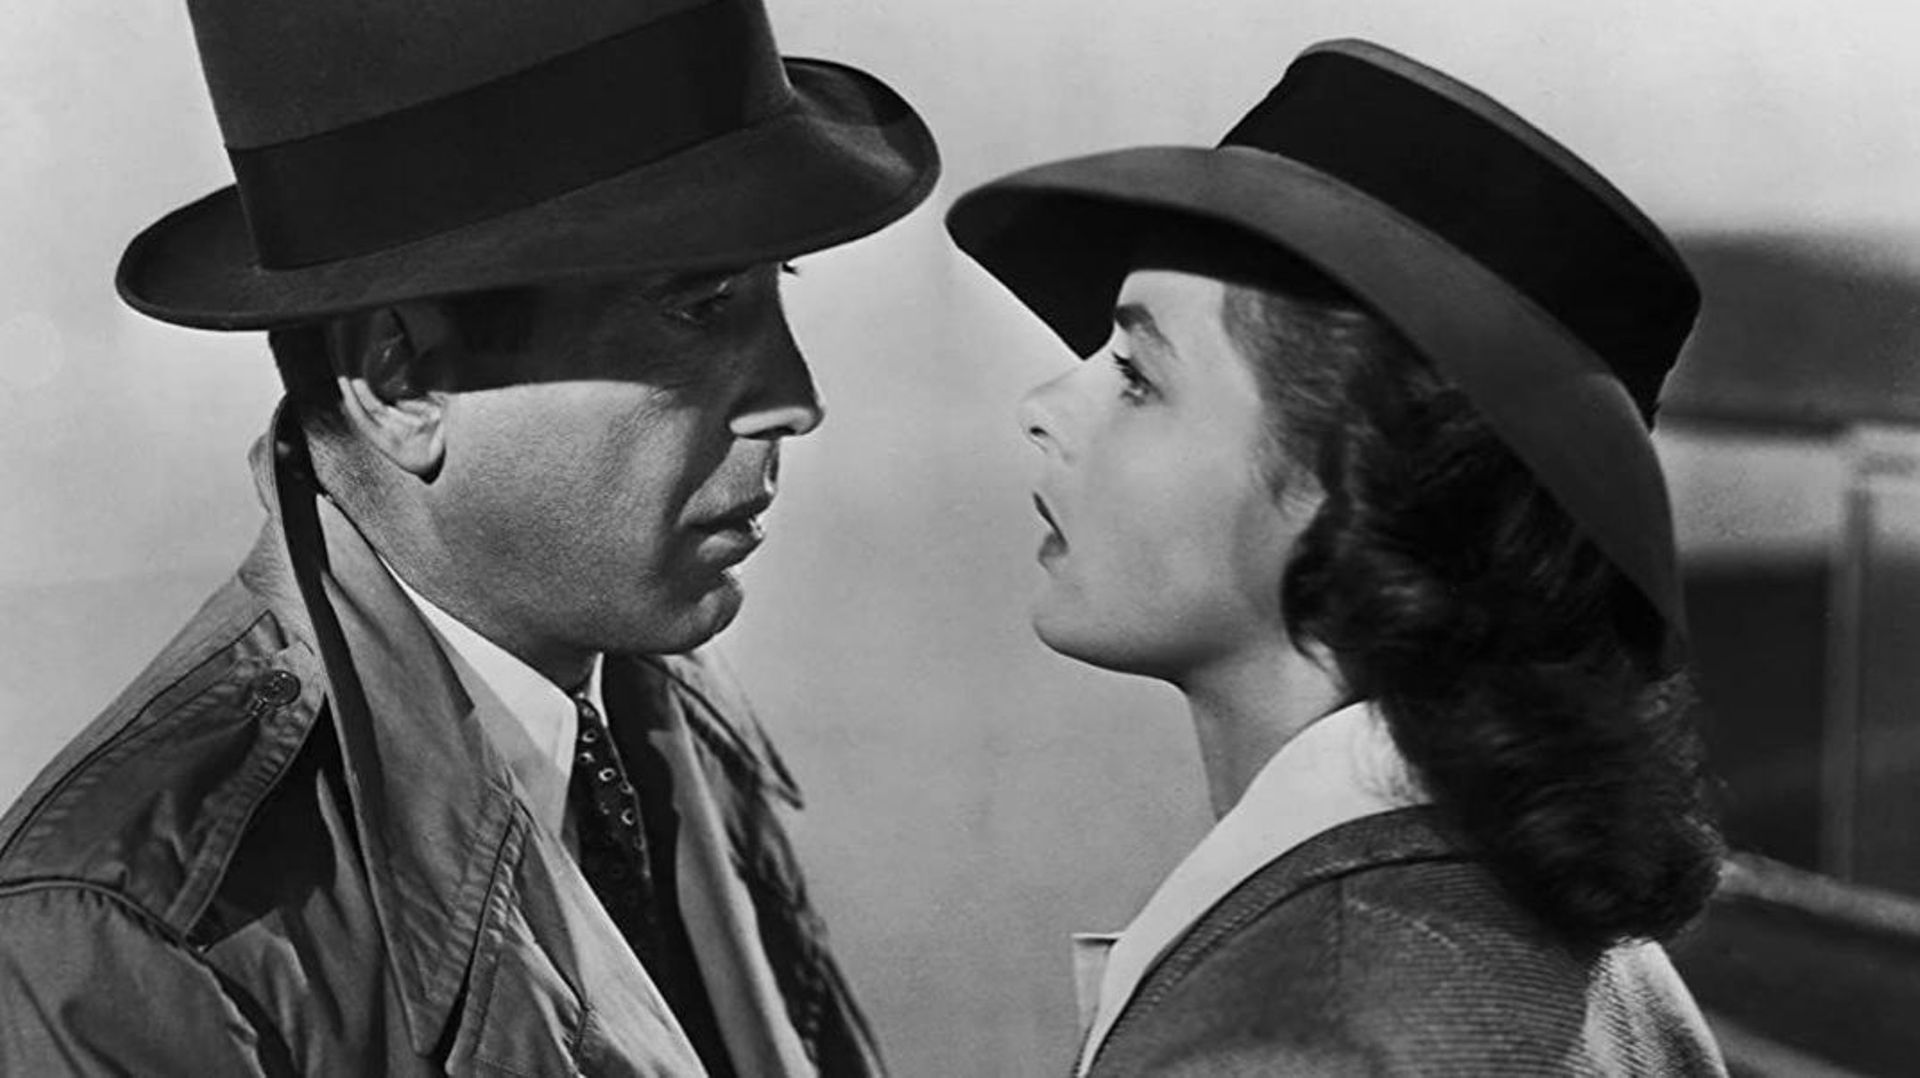 Humphrey et Ingrid, éternels amants dans "Casablanca"